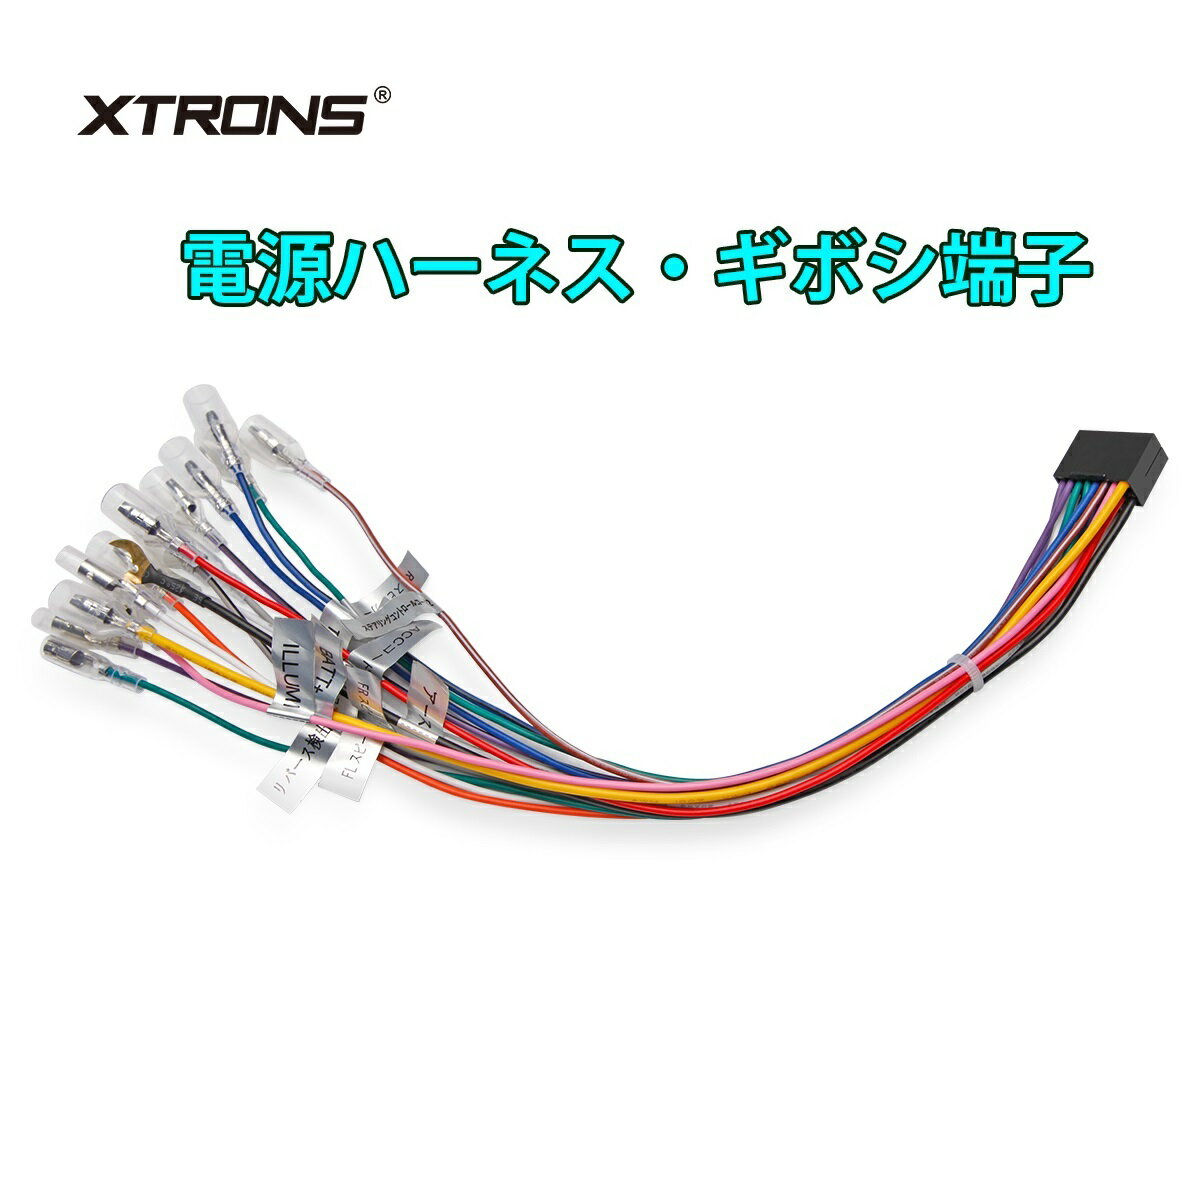 XTRONS 専用線 オーディオハーネス アンドロイド機種専用 日本車専用 16P 電源ケーブル ギボシ端子 カーナビハーネス 取付ハーネス TX121L/DX120L/TIE124/TIE723L/DIE123L/TIA712L/TSF721A/TIQ722Pに適用 (AK/MA/ISO_JP)